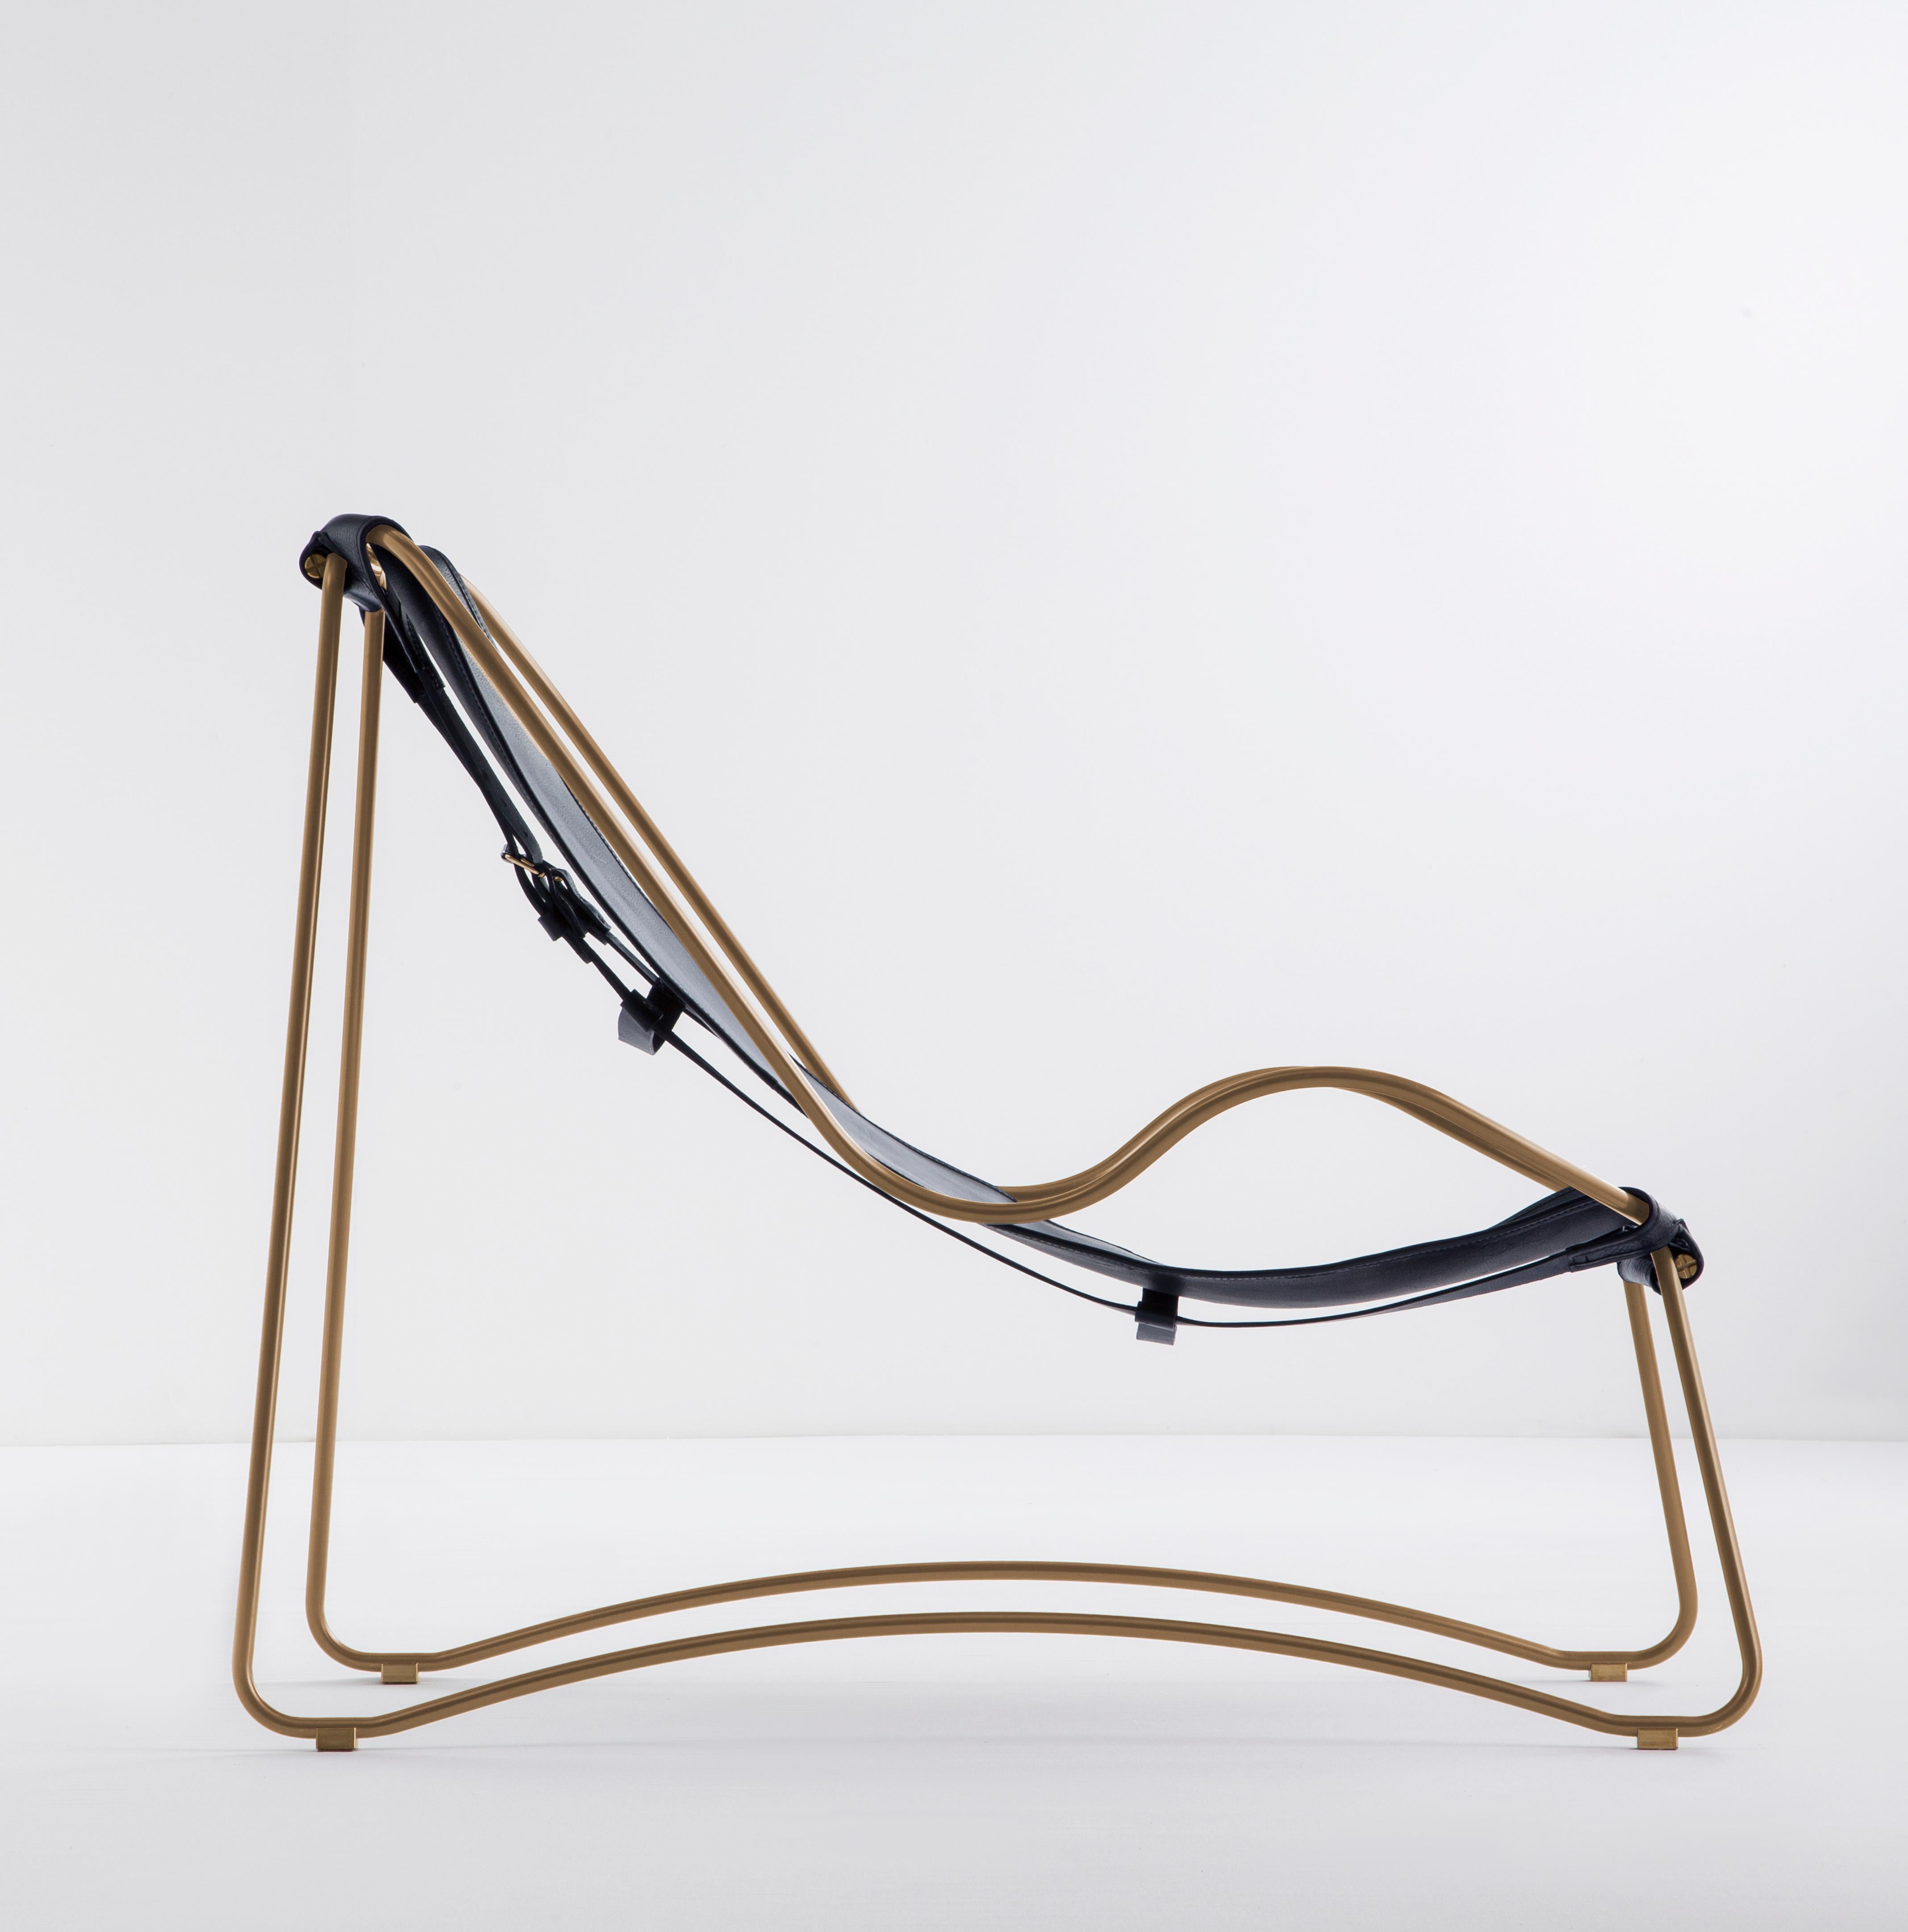 Exemple de salle d'exposition

La chaise longue contemporaine Hug est dessinée et conçue avec une esthétique légère, la légère oscillation de la tige d'acier de 16...  mm est complétée par la souplesse du double cuir de 3,5 mm d'épaisseur. En